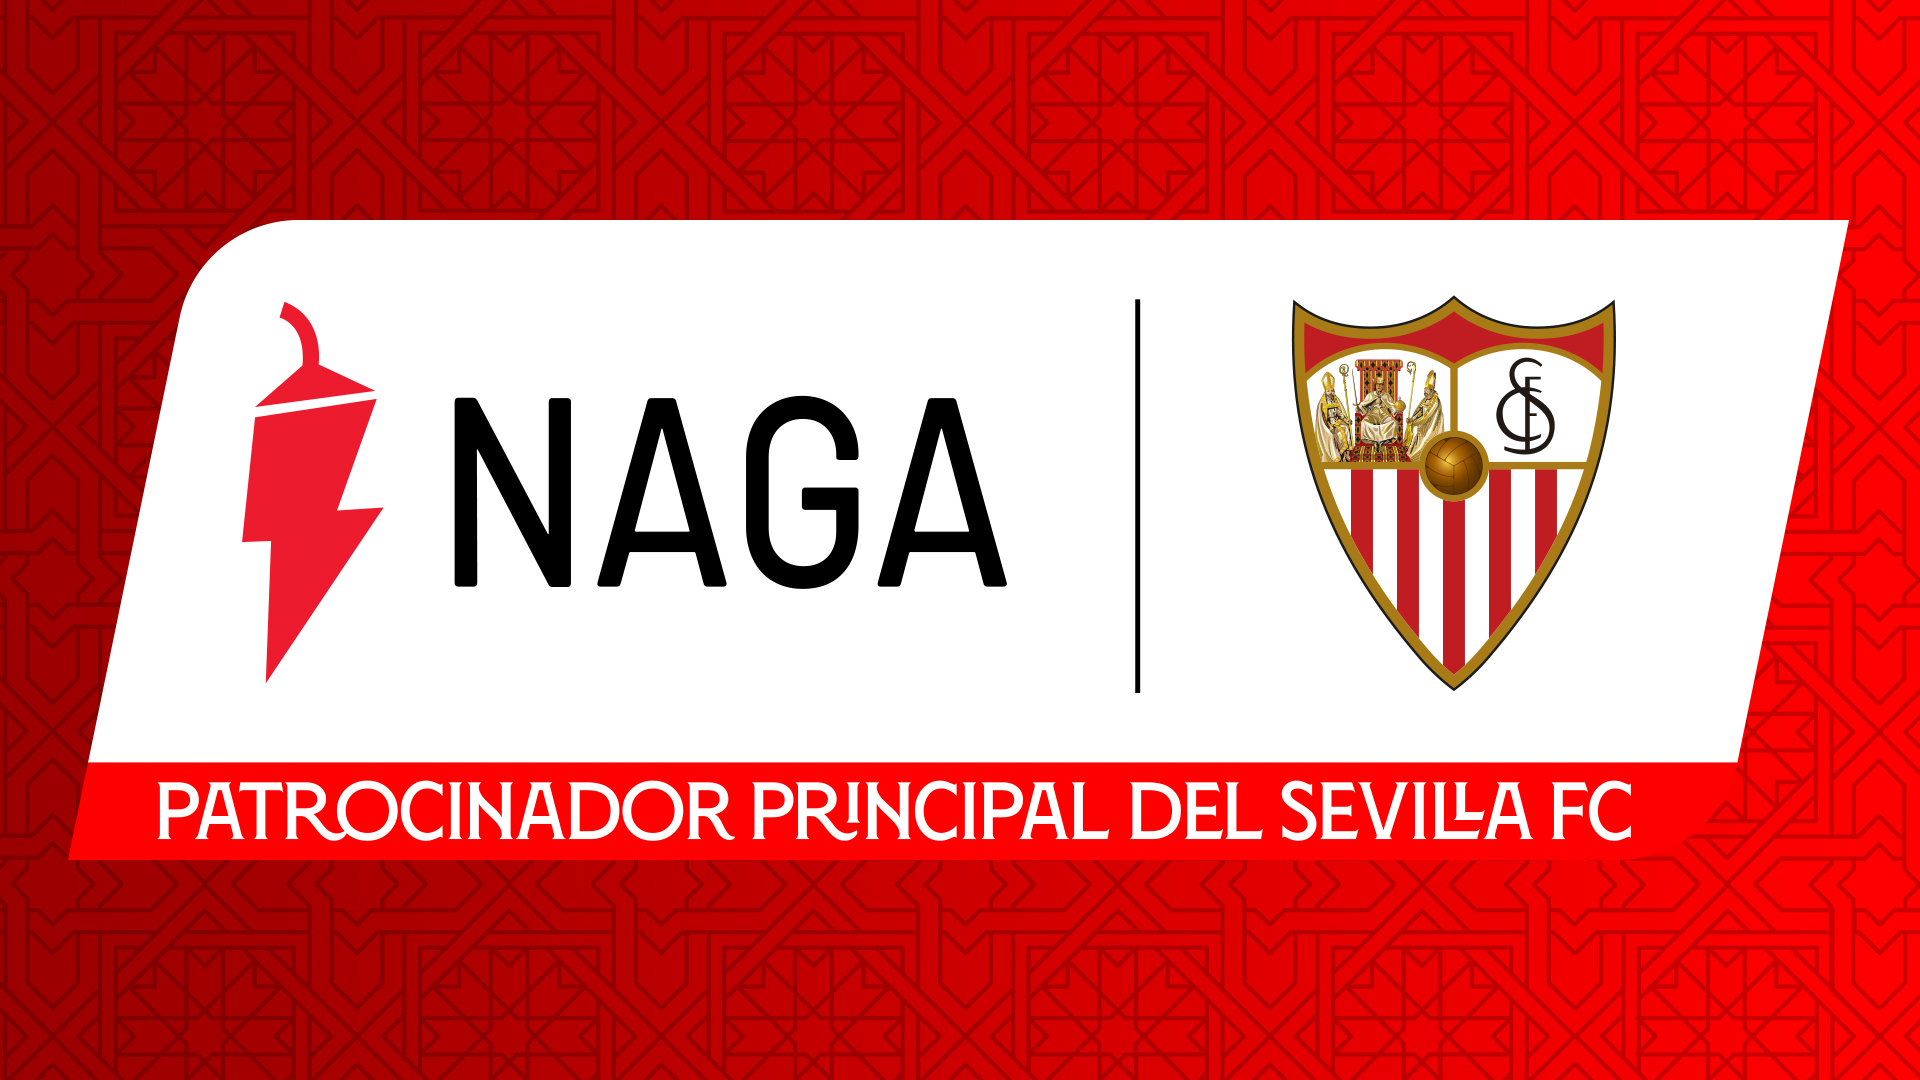 塞维利亚足球俱乐部和NAGA建立全球合作伙伴关系